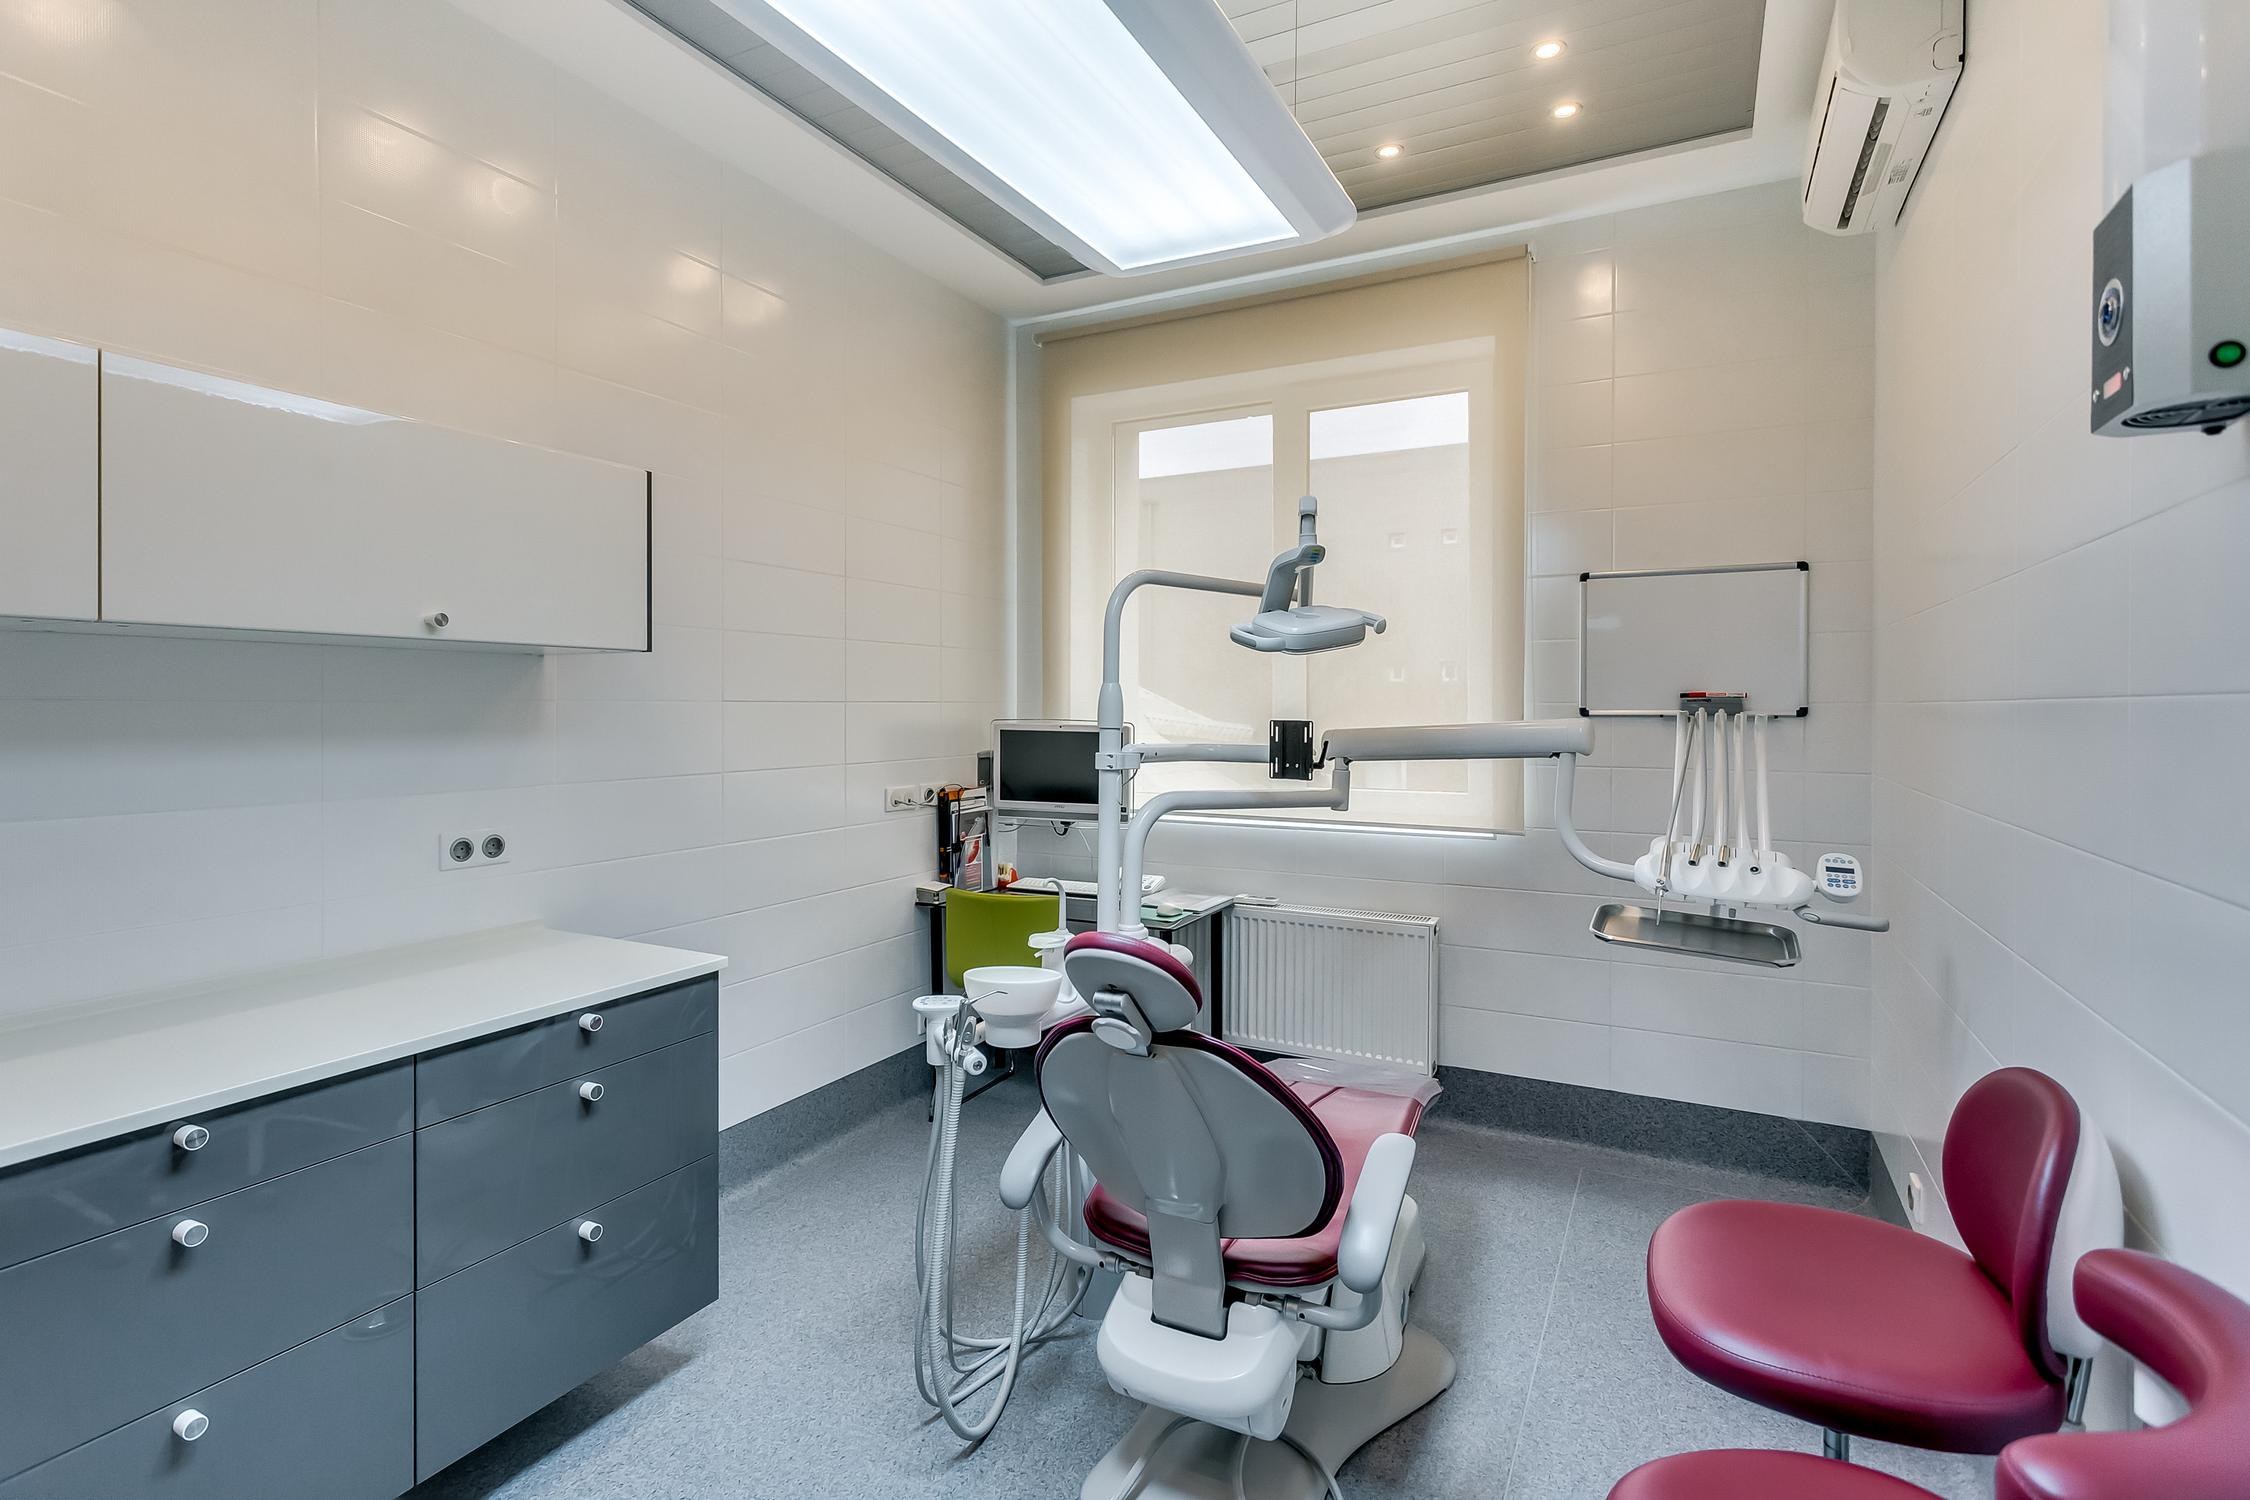 Отделка стоматологического кабинета